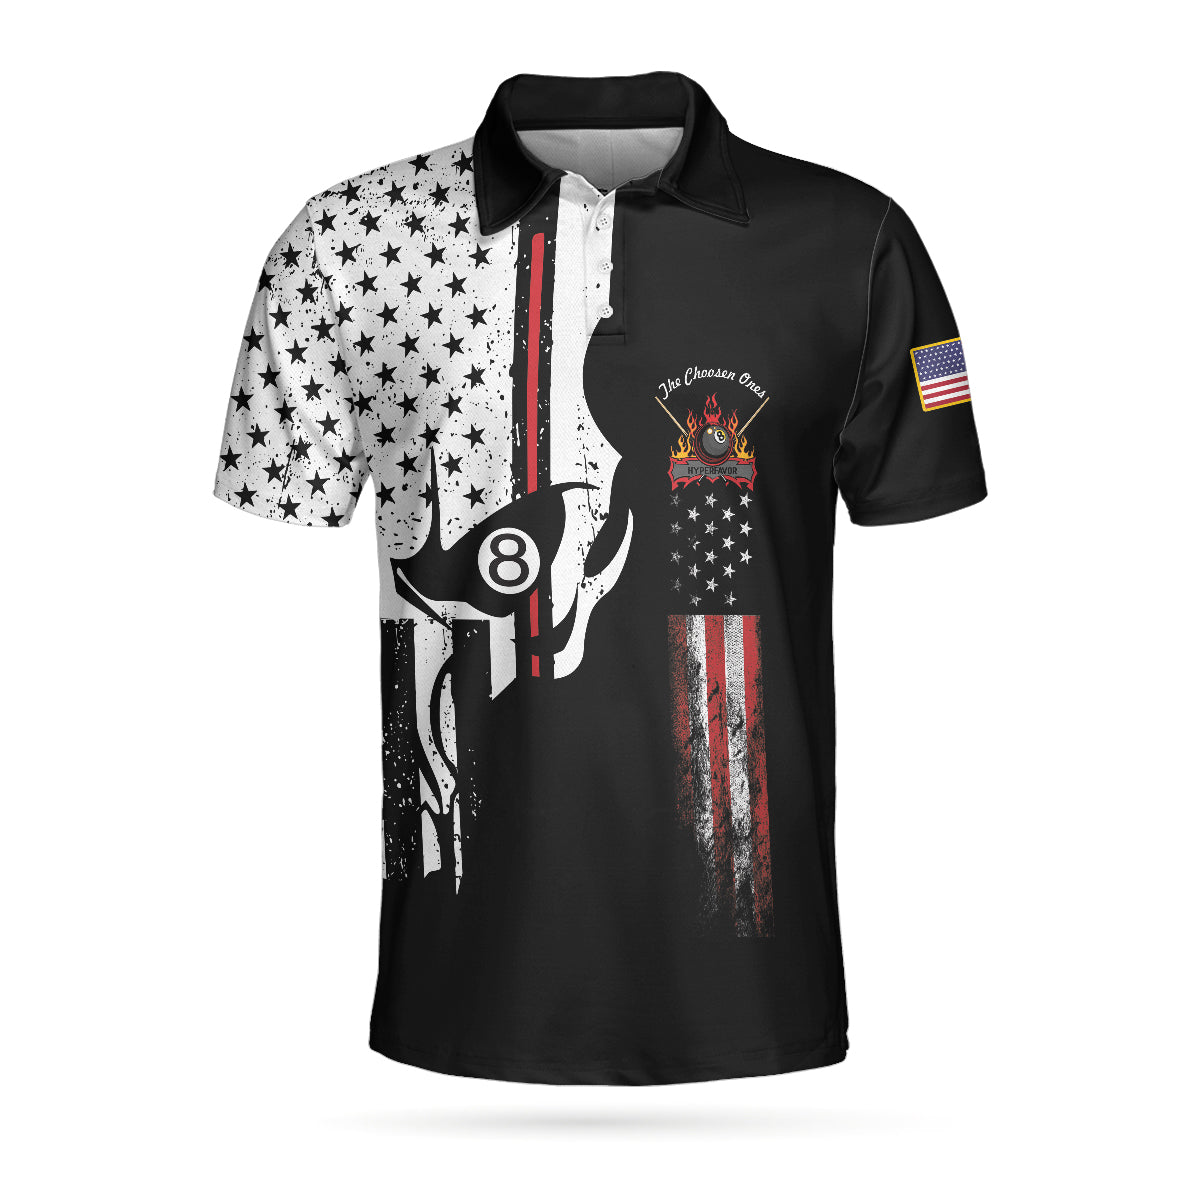 Men Polo Shirt - The Chosen Ones Skull Billiards Pool Polo Shirt, 8-ball Black And White Skull American Flag Billiards Shirt For Men